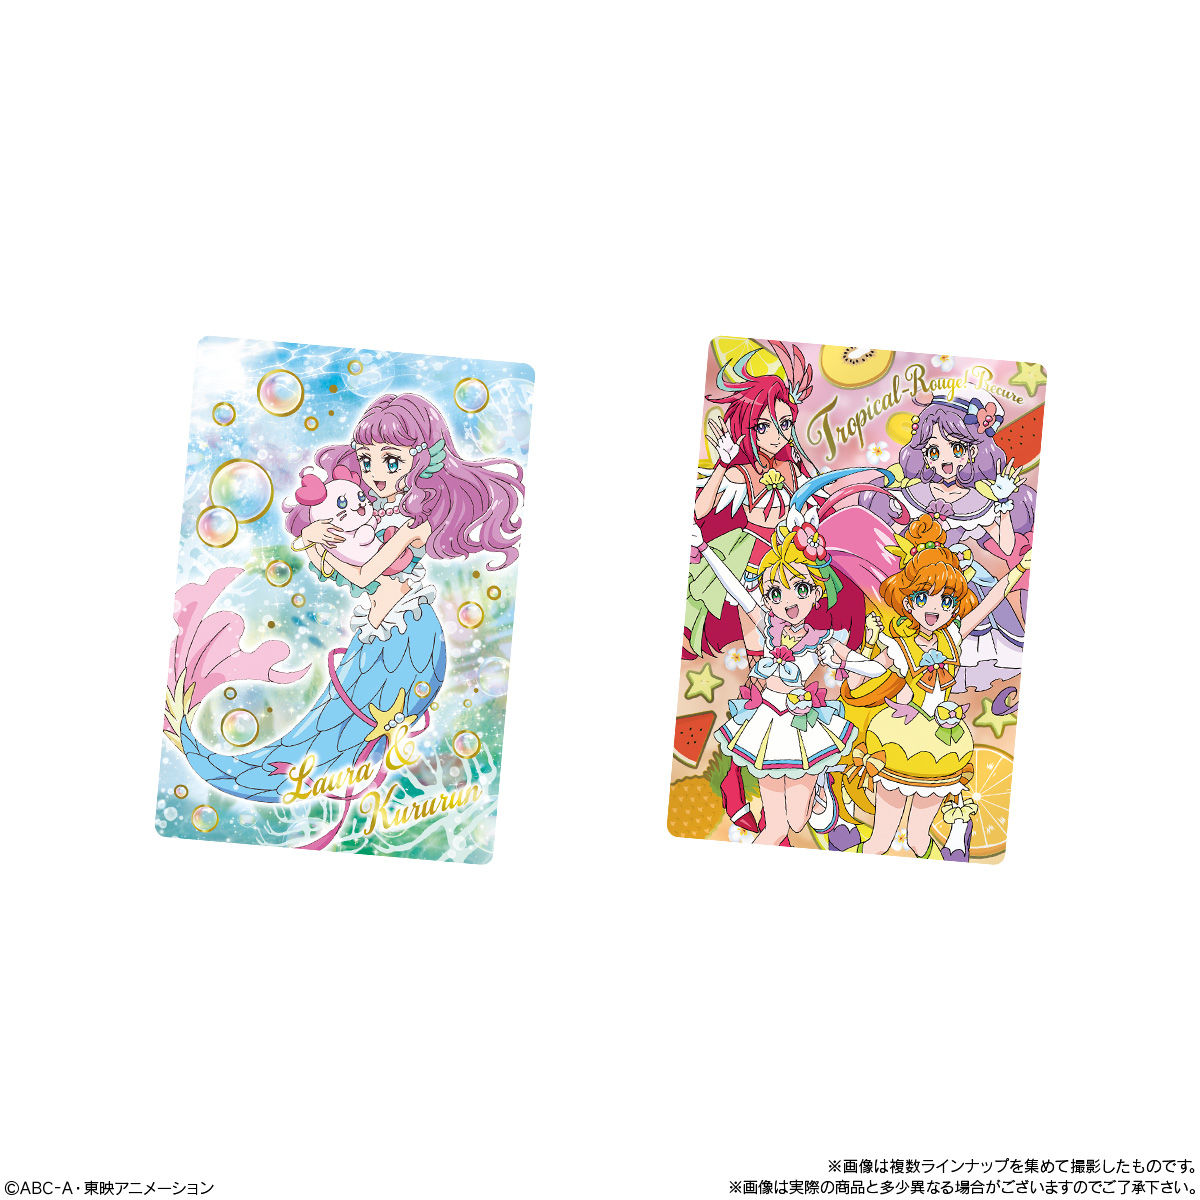 トロピカル ジュ プリキュア キラキラカードグミ 発売日 21年2月15日 バンダイ キャンディ公式サイト